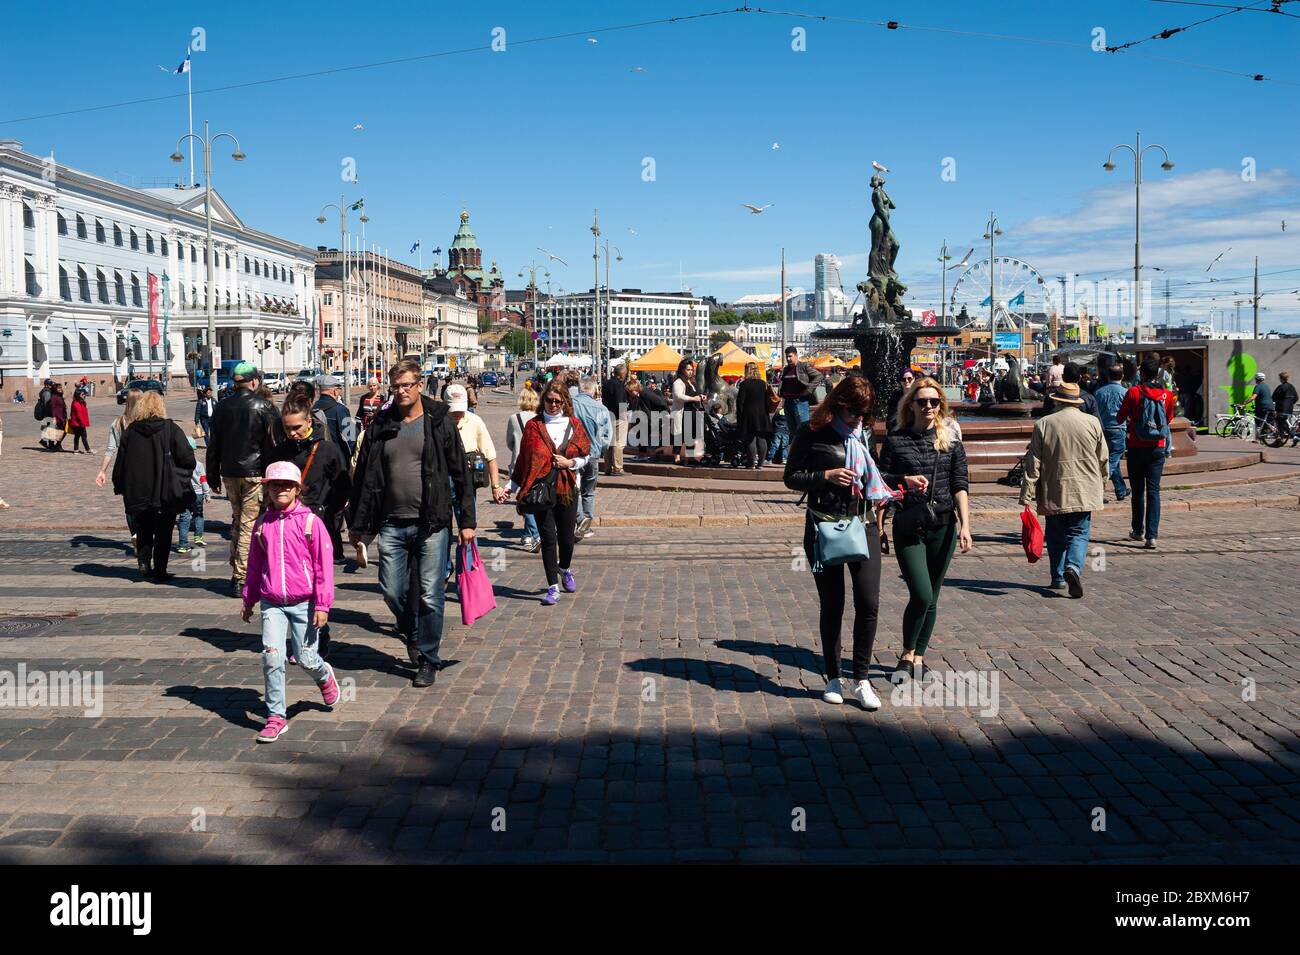 23.06.2018, Helsinki, Finlandia, Europa - una scena di strada con pedoni nel centro della città della capitale finlandese durante la metà dell'estate. Foto Stock